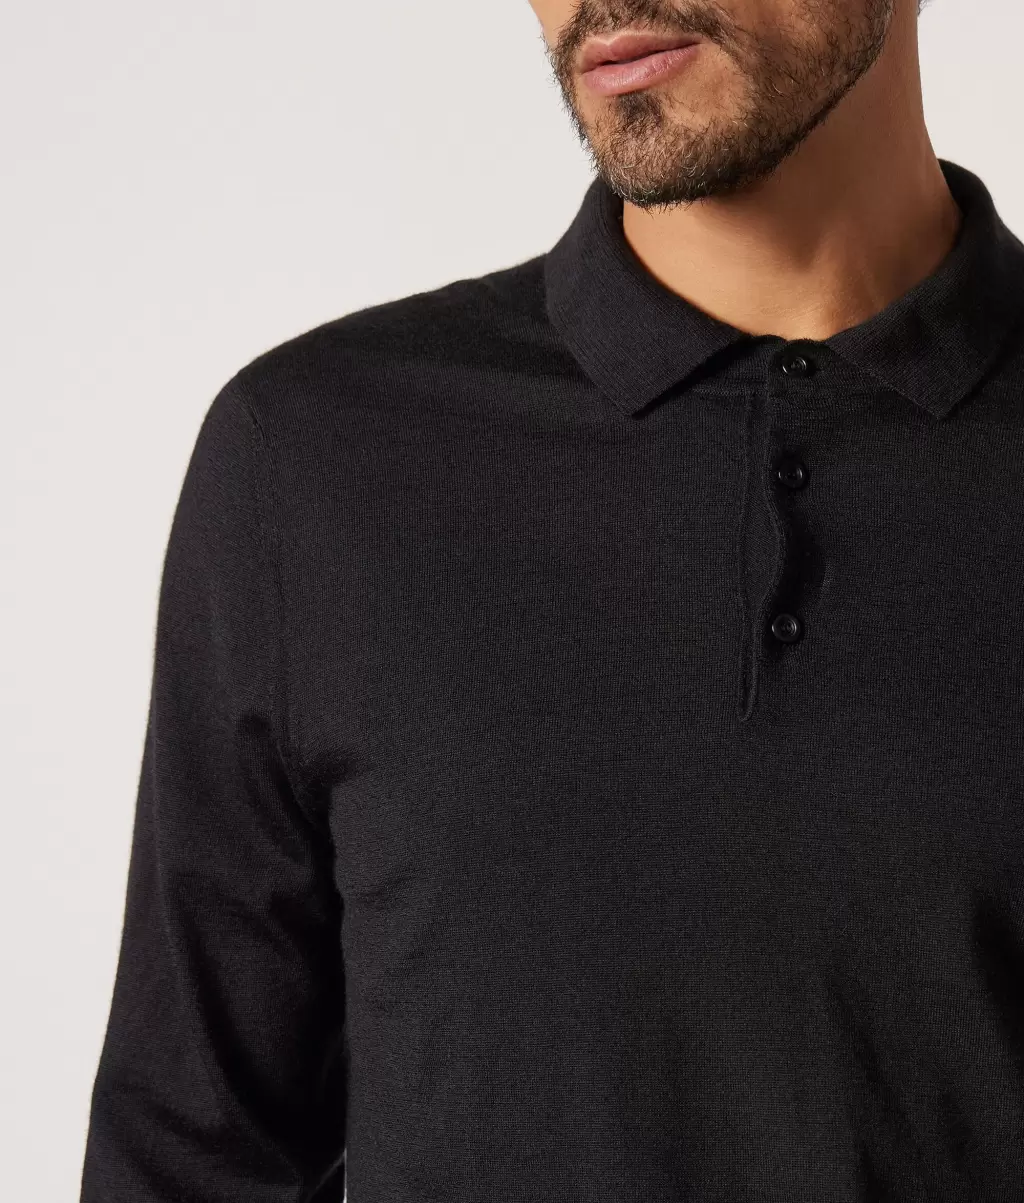 Black T-Shirty I Koszulki Polo Mężczyzna Falconeri Koszulka Polo Z Kaszmiru Ultrafine - 3